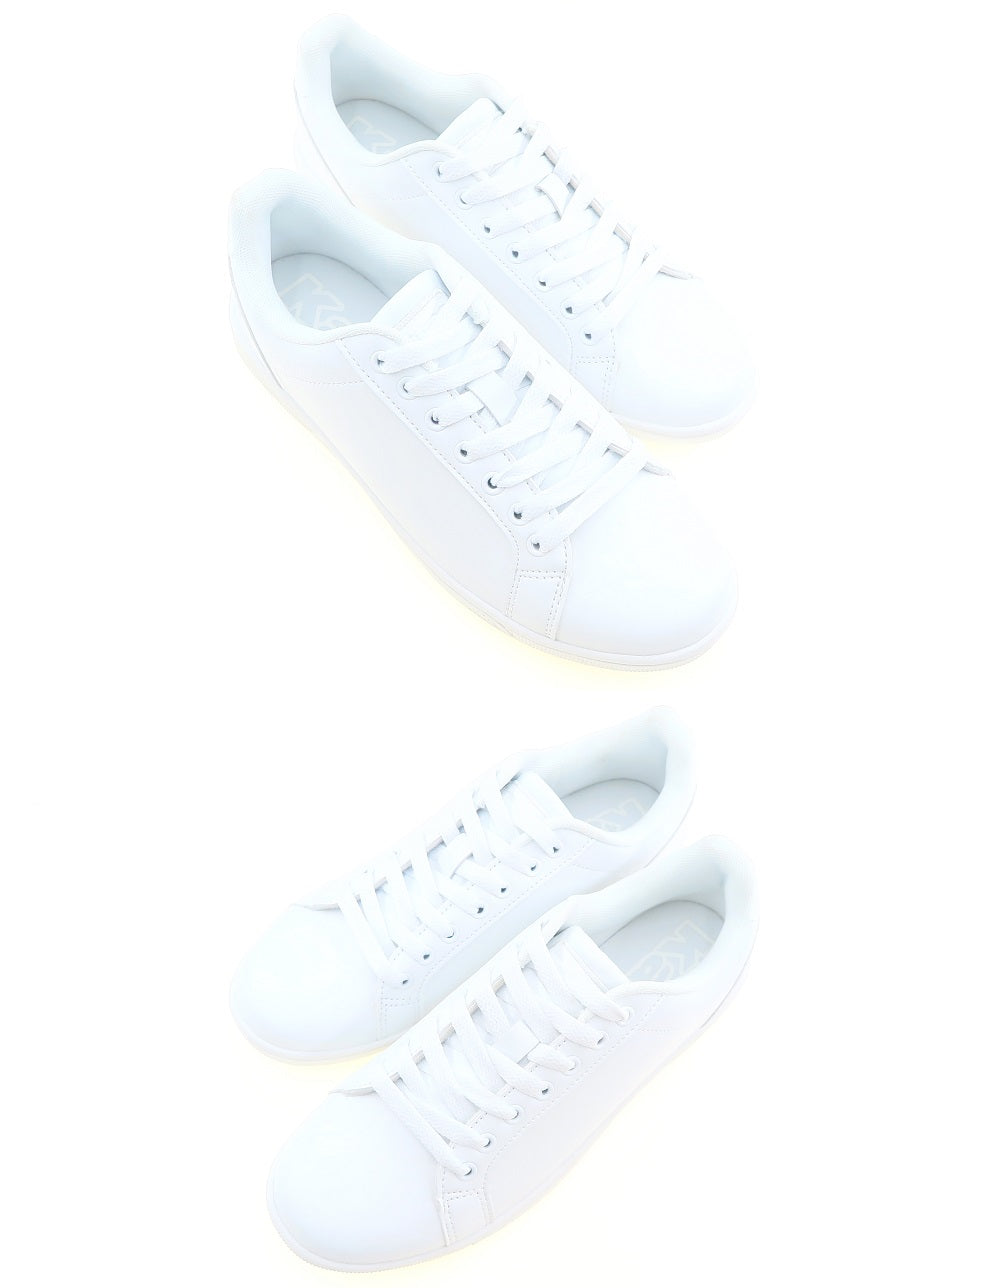 Moda Kappa Unisex School Shoe in White Colour (902) – Moda Paolo Pte Ltd